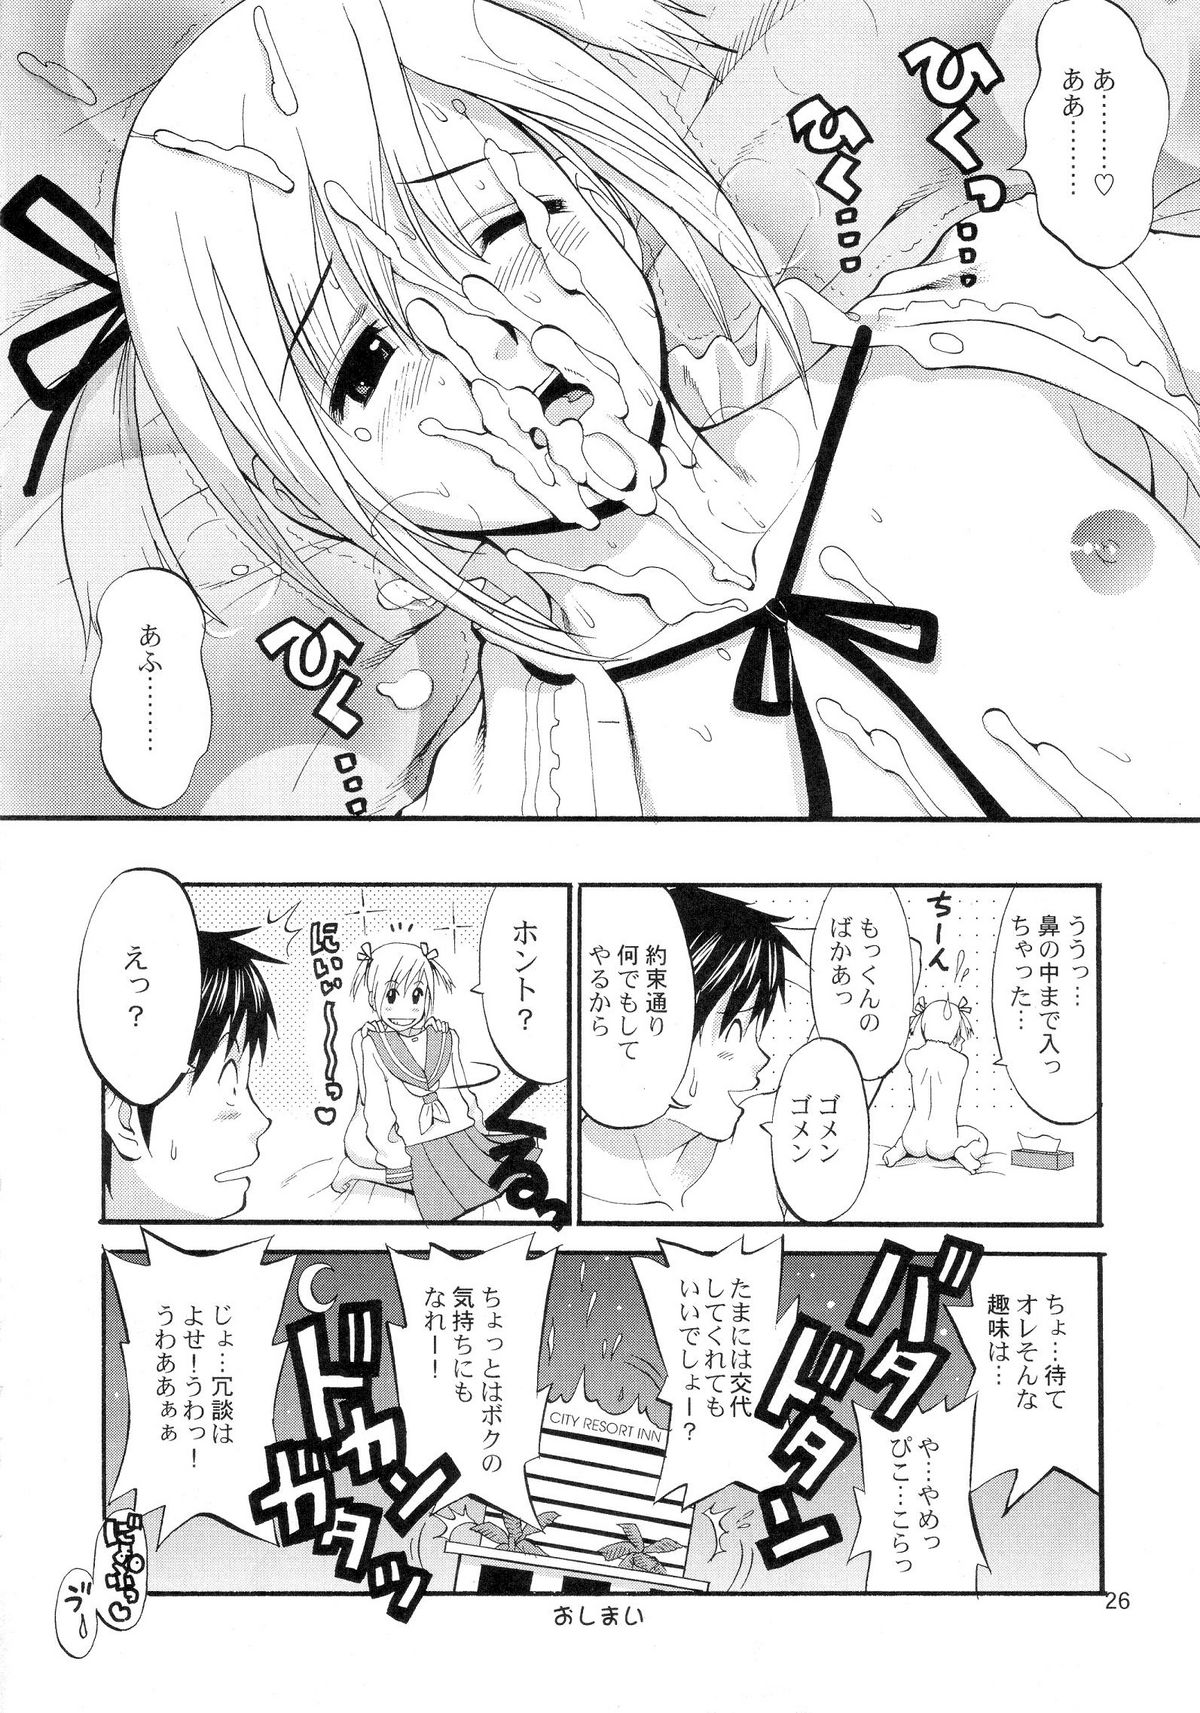 (COMIC1) [Saigado] Boku no Pico Comic + Koushiki Character Genanshuu (Boku no Pico) page 24 full